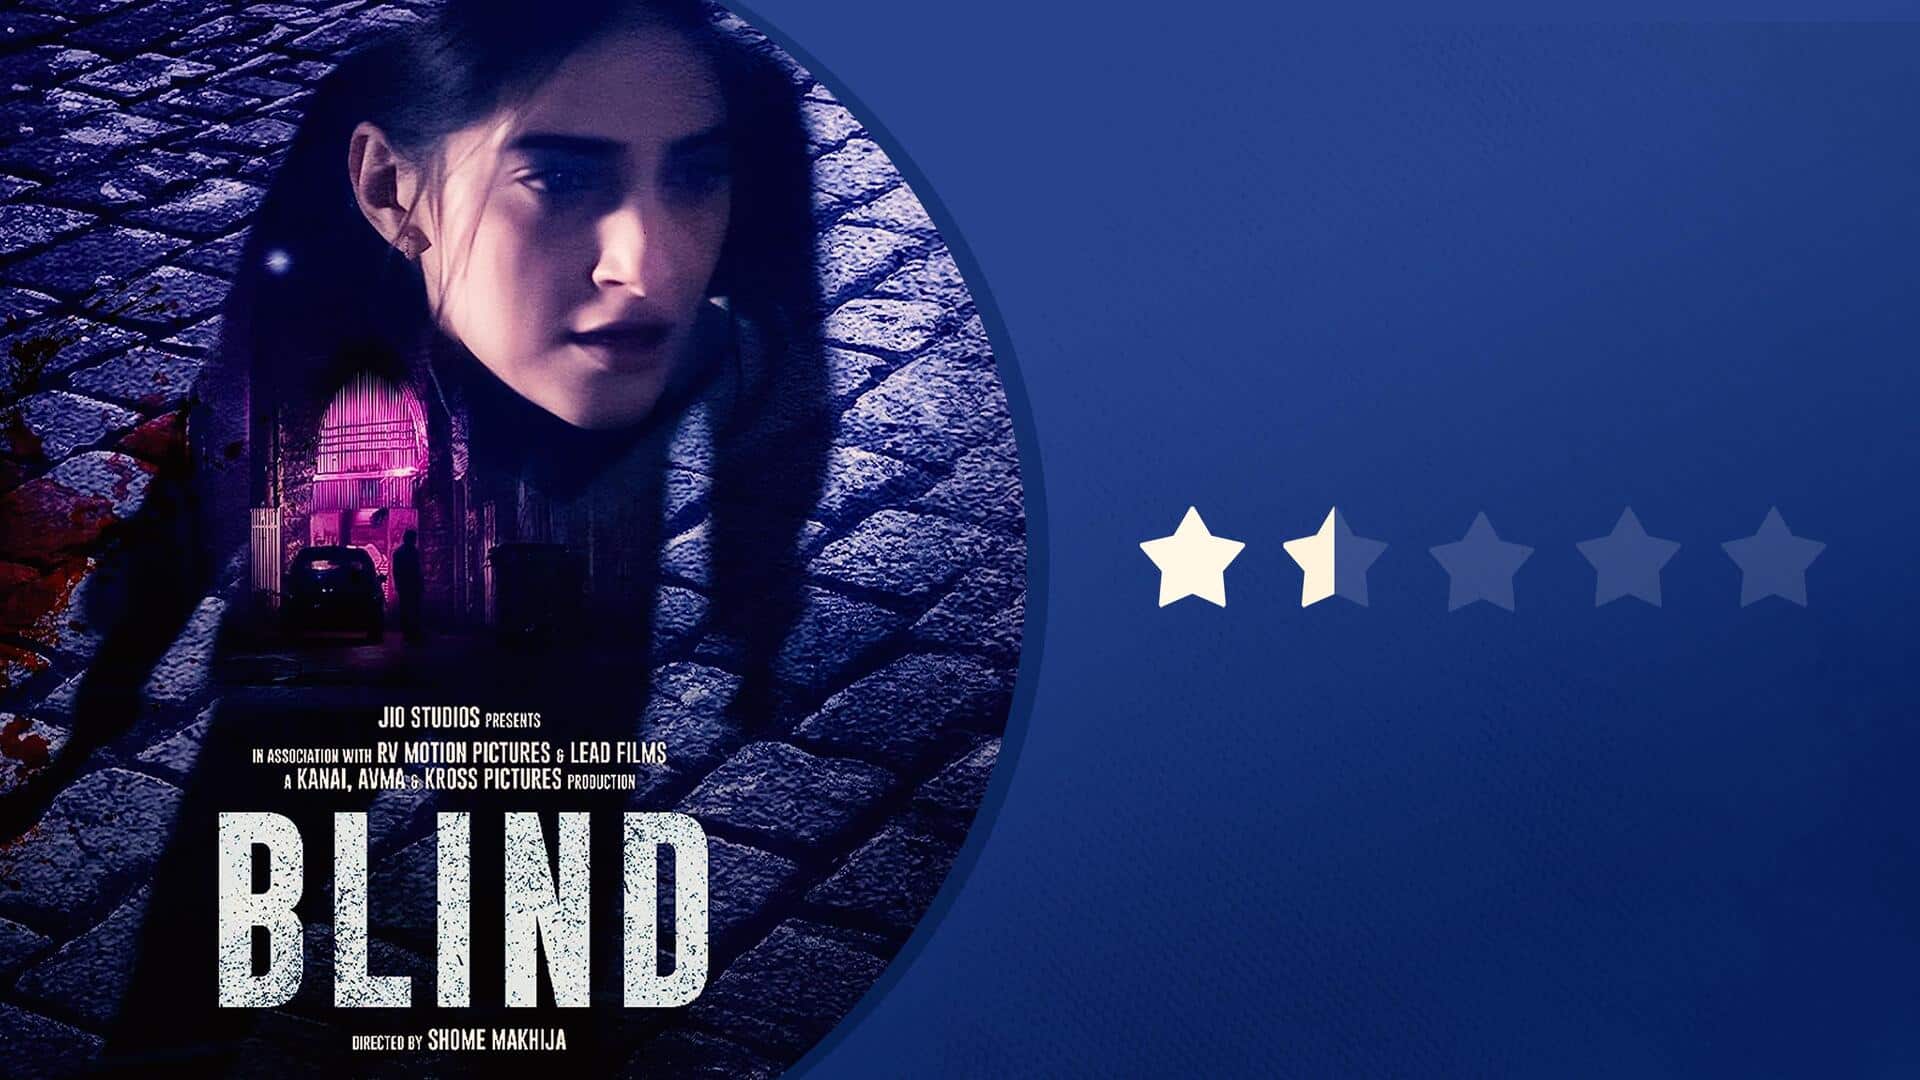 फिल्म 'ब्लाइंड' रिव्यू: न रहस्य दिखा, न रोमांच; सोनम की कोशिश नाकाम